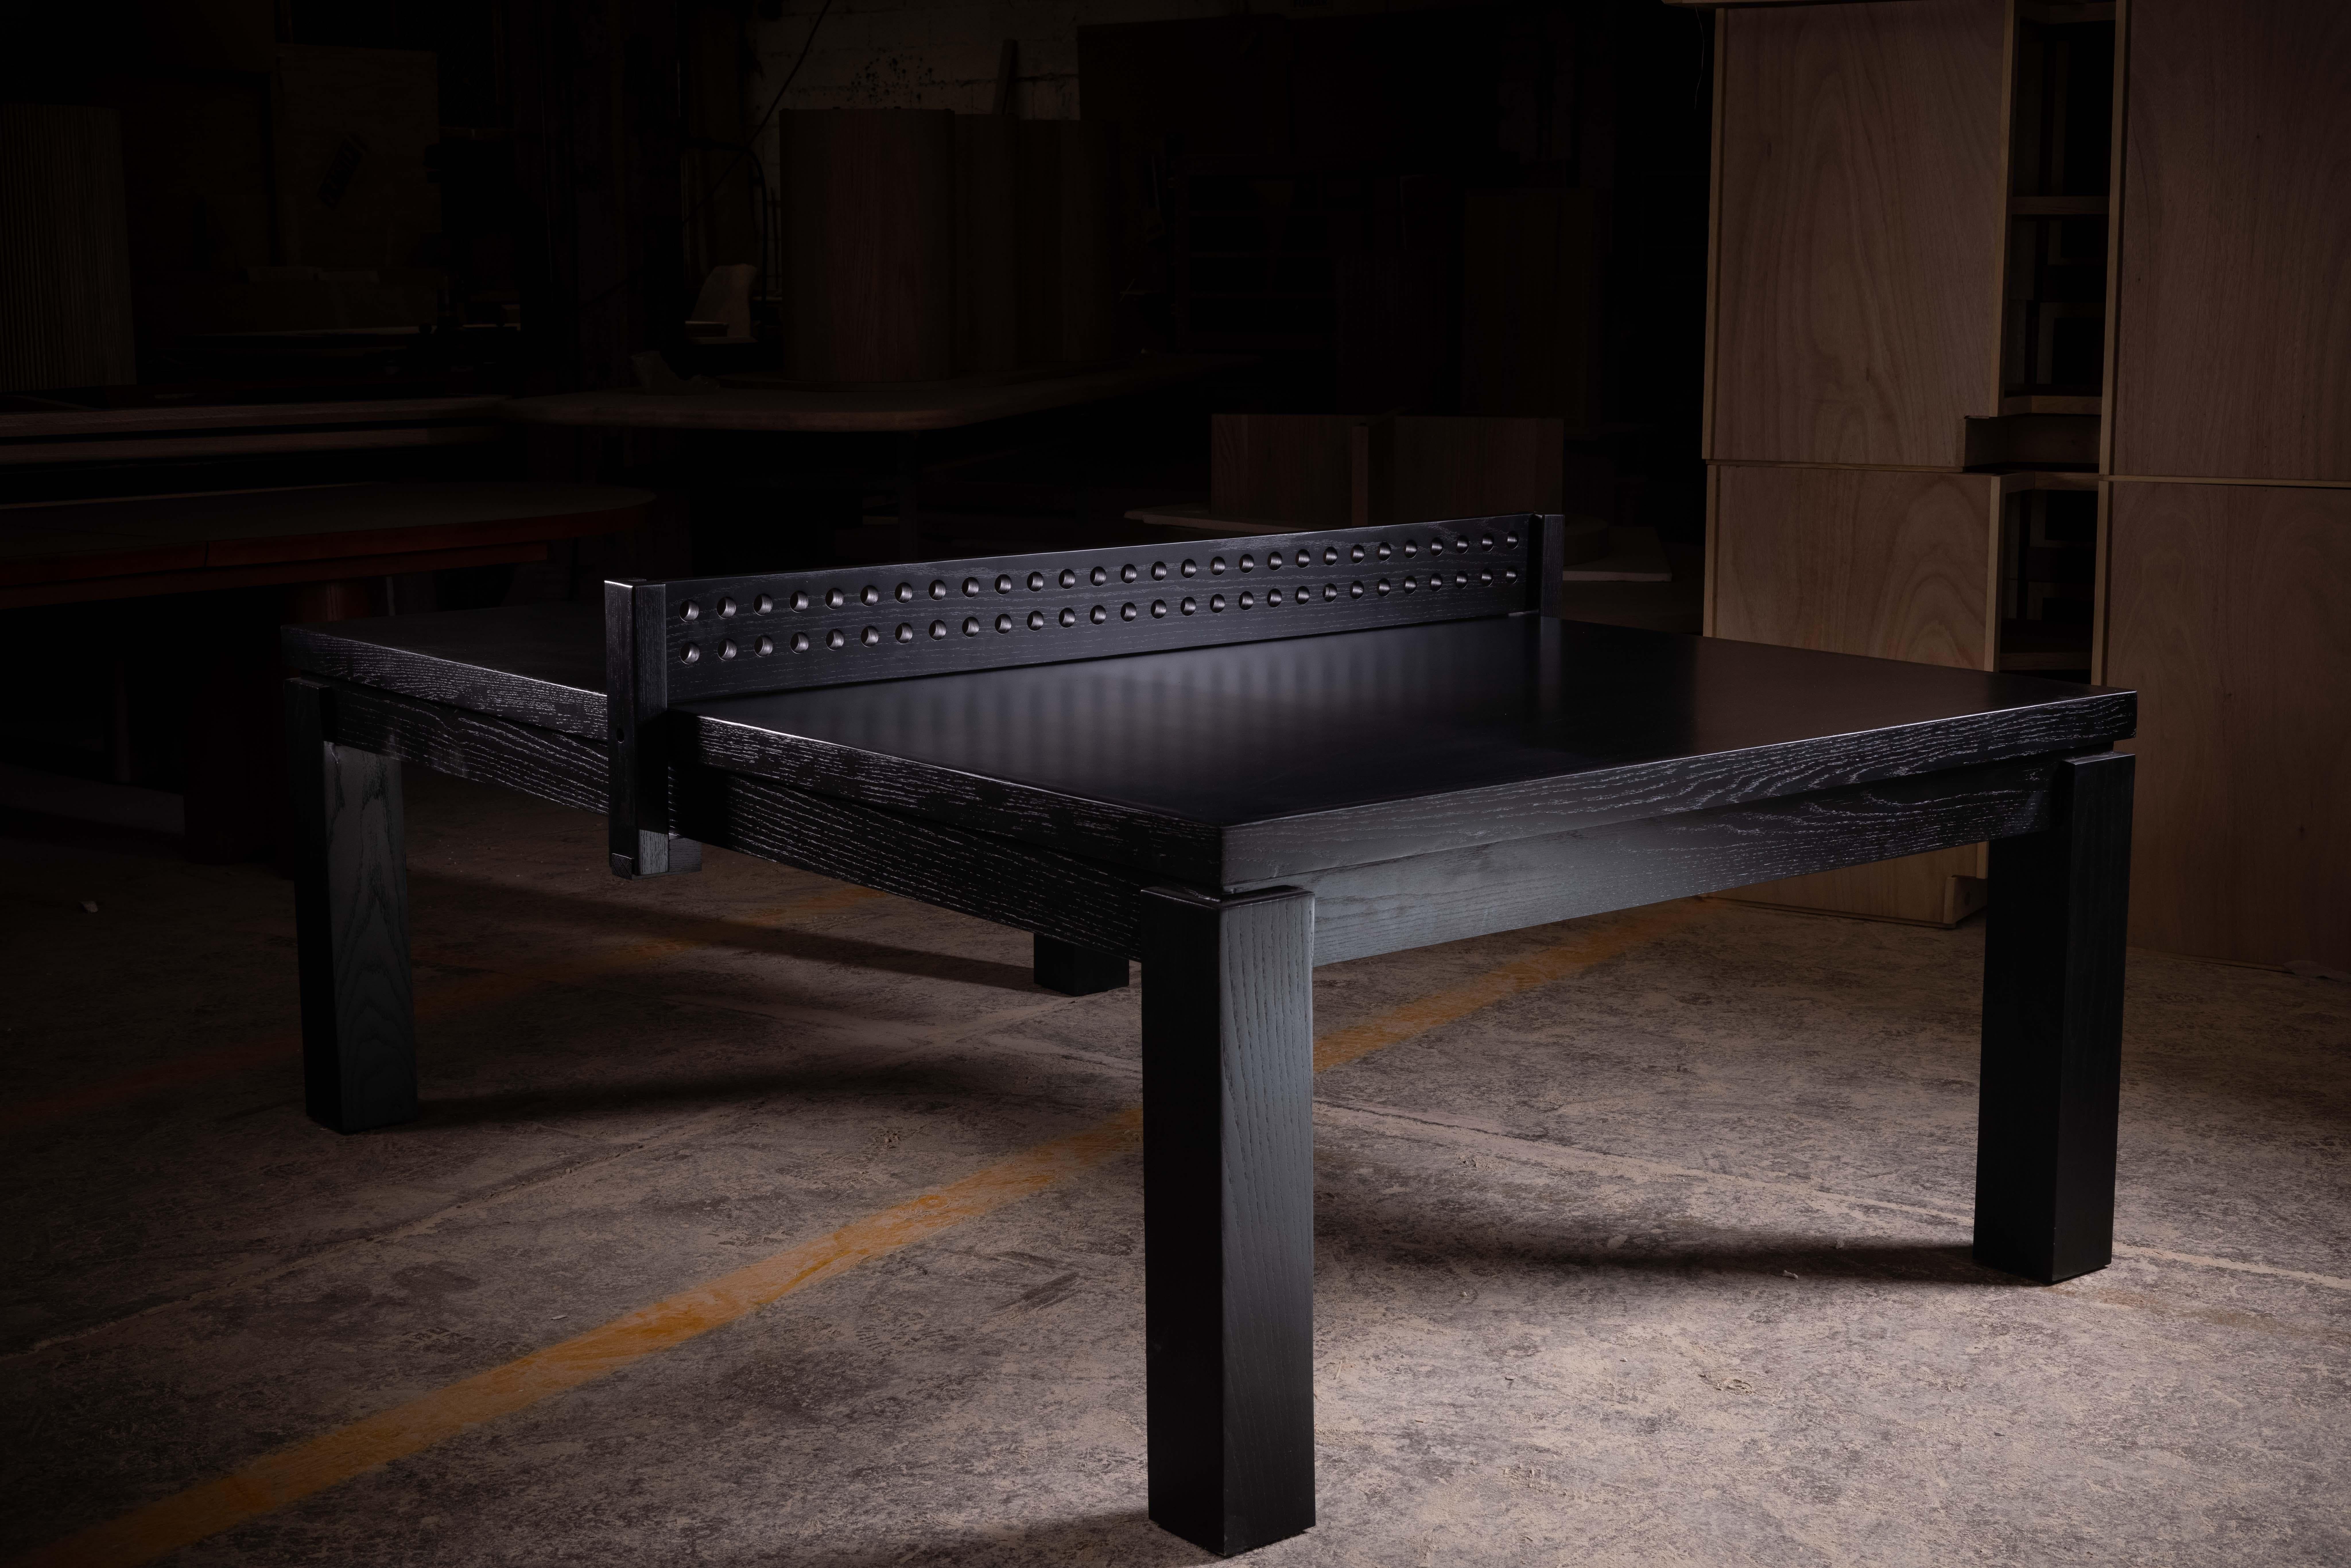 Table de ping-pong en chêne massif avec une finition lisse teintée en noir. Le filet est fabriqué en chêne massif.